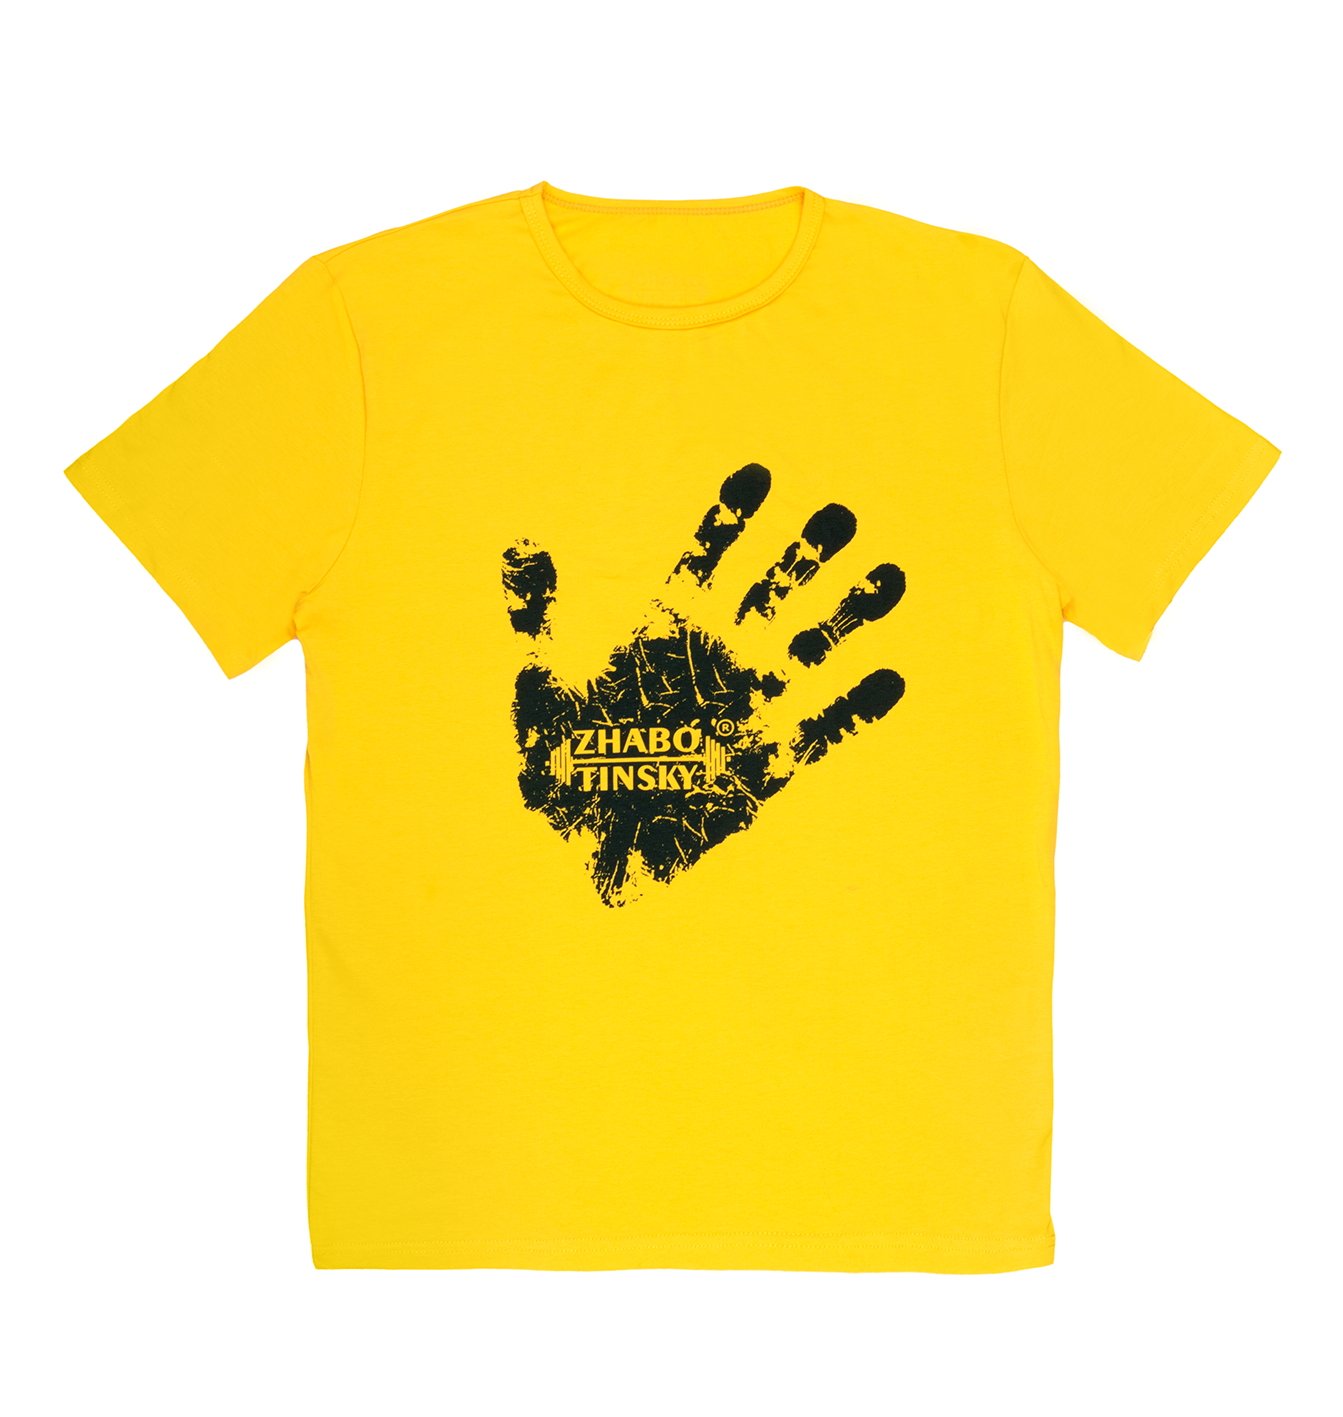 Men's T-shirt Winner's hand, yellow, S